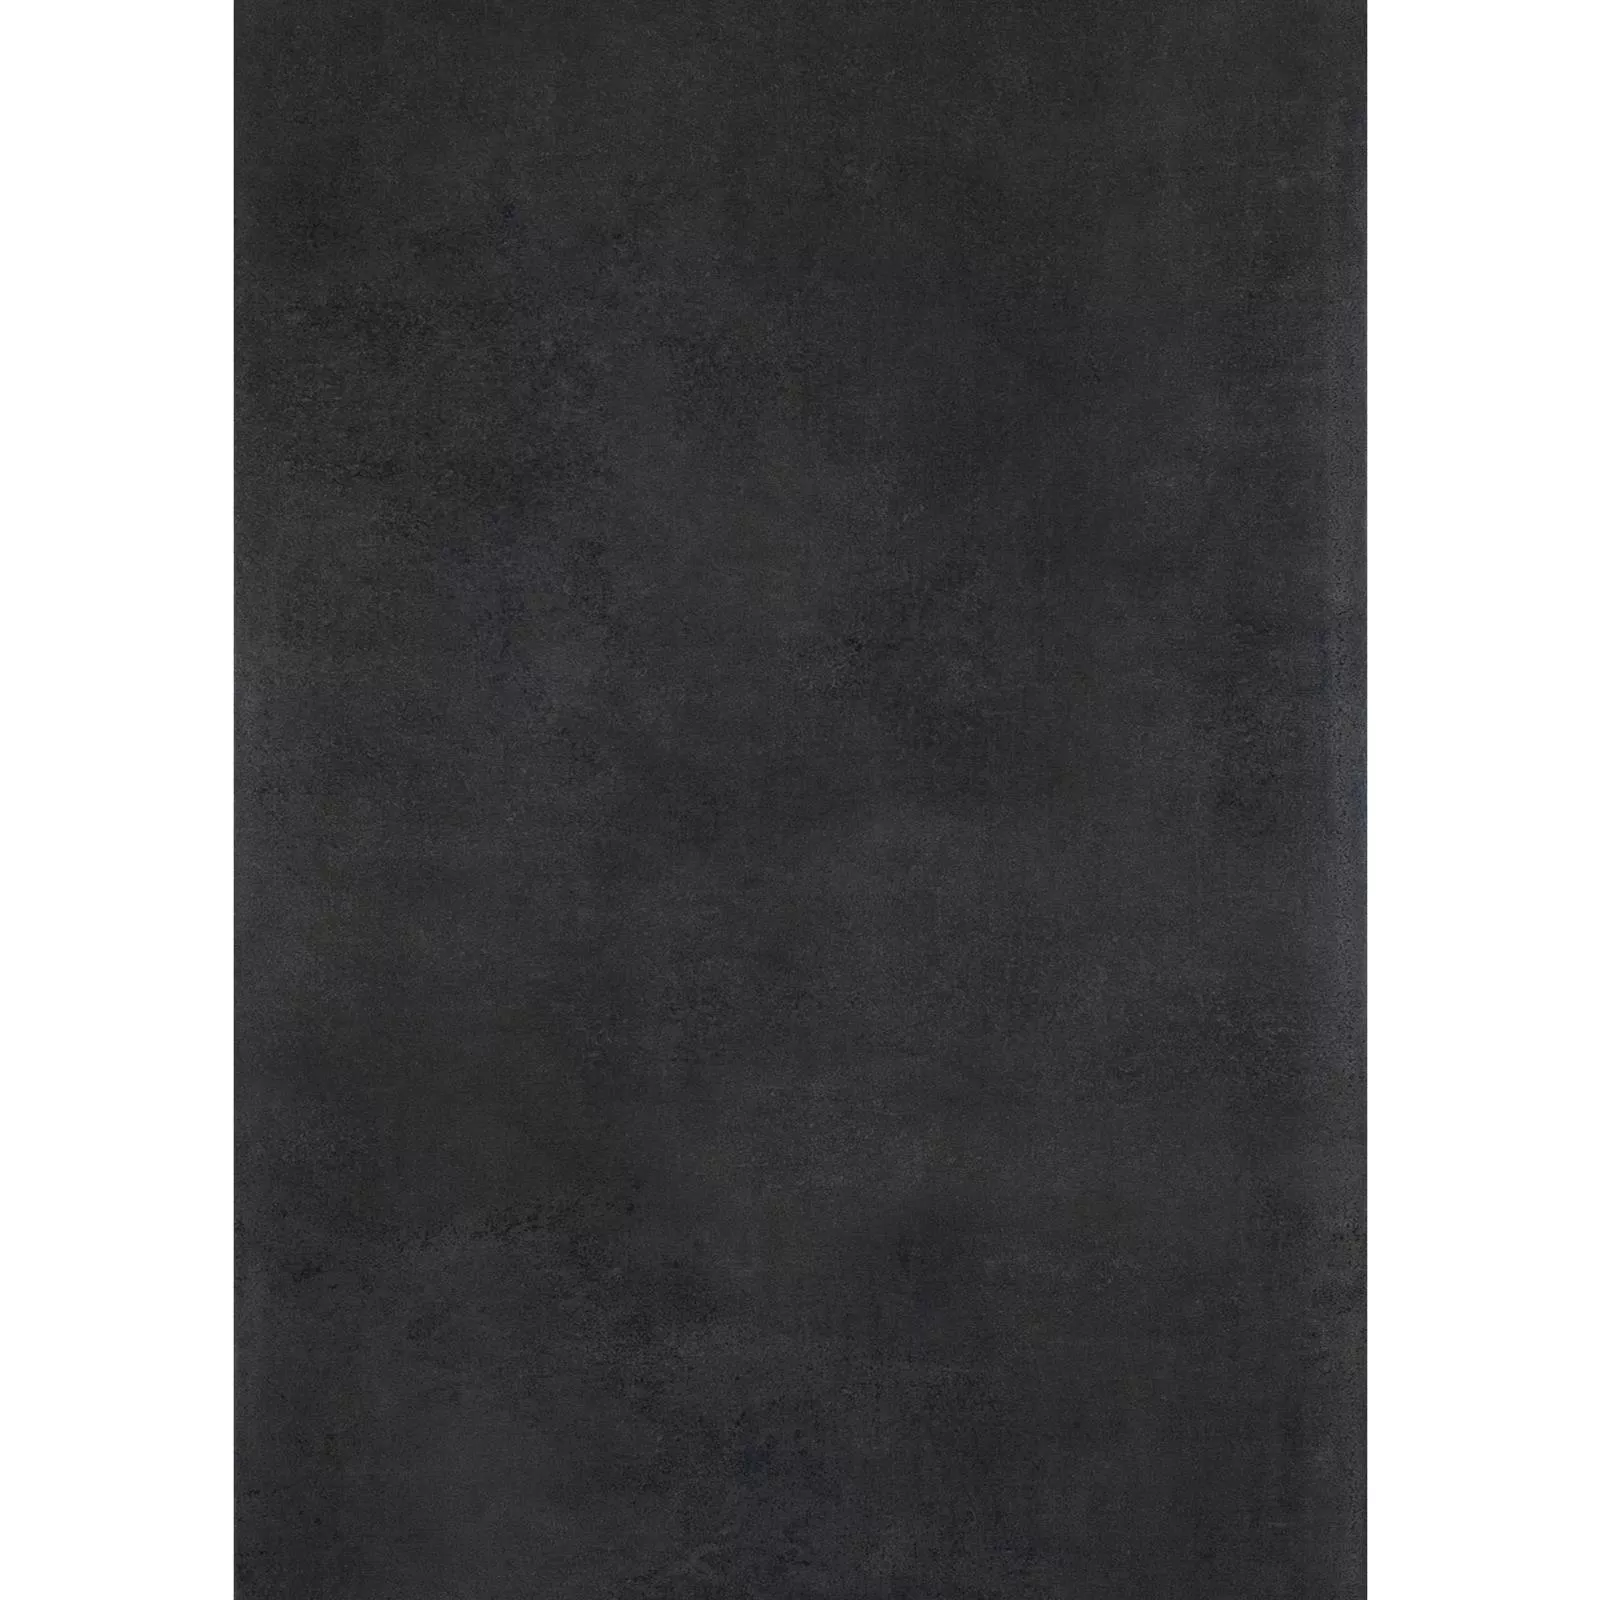 Πλακάκι Δαπέδου Mainland Συγκεκριμένη Εμφάνιση Αμεμπτος 60x120cm Μαύρος